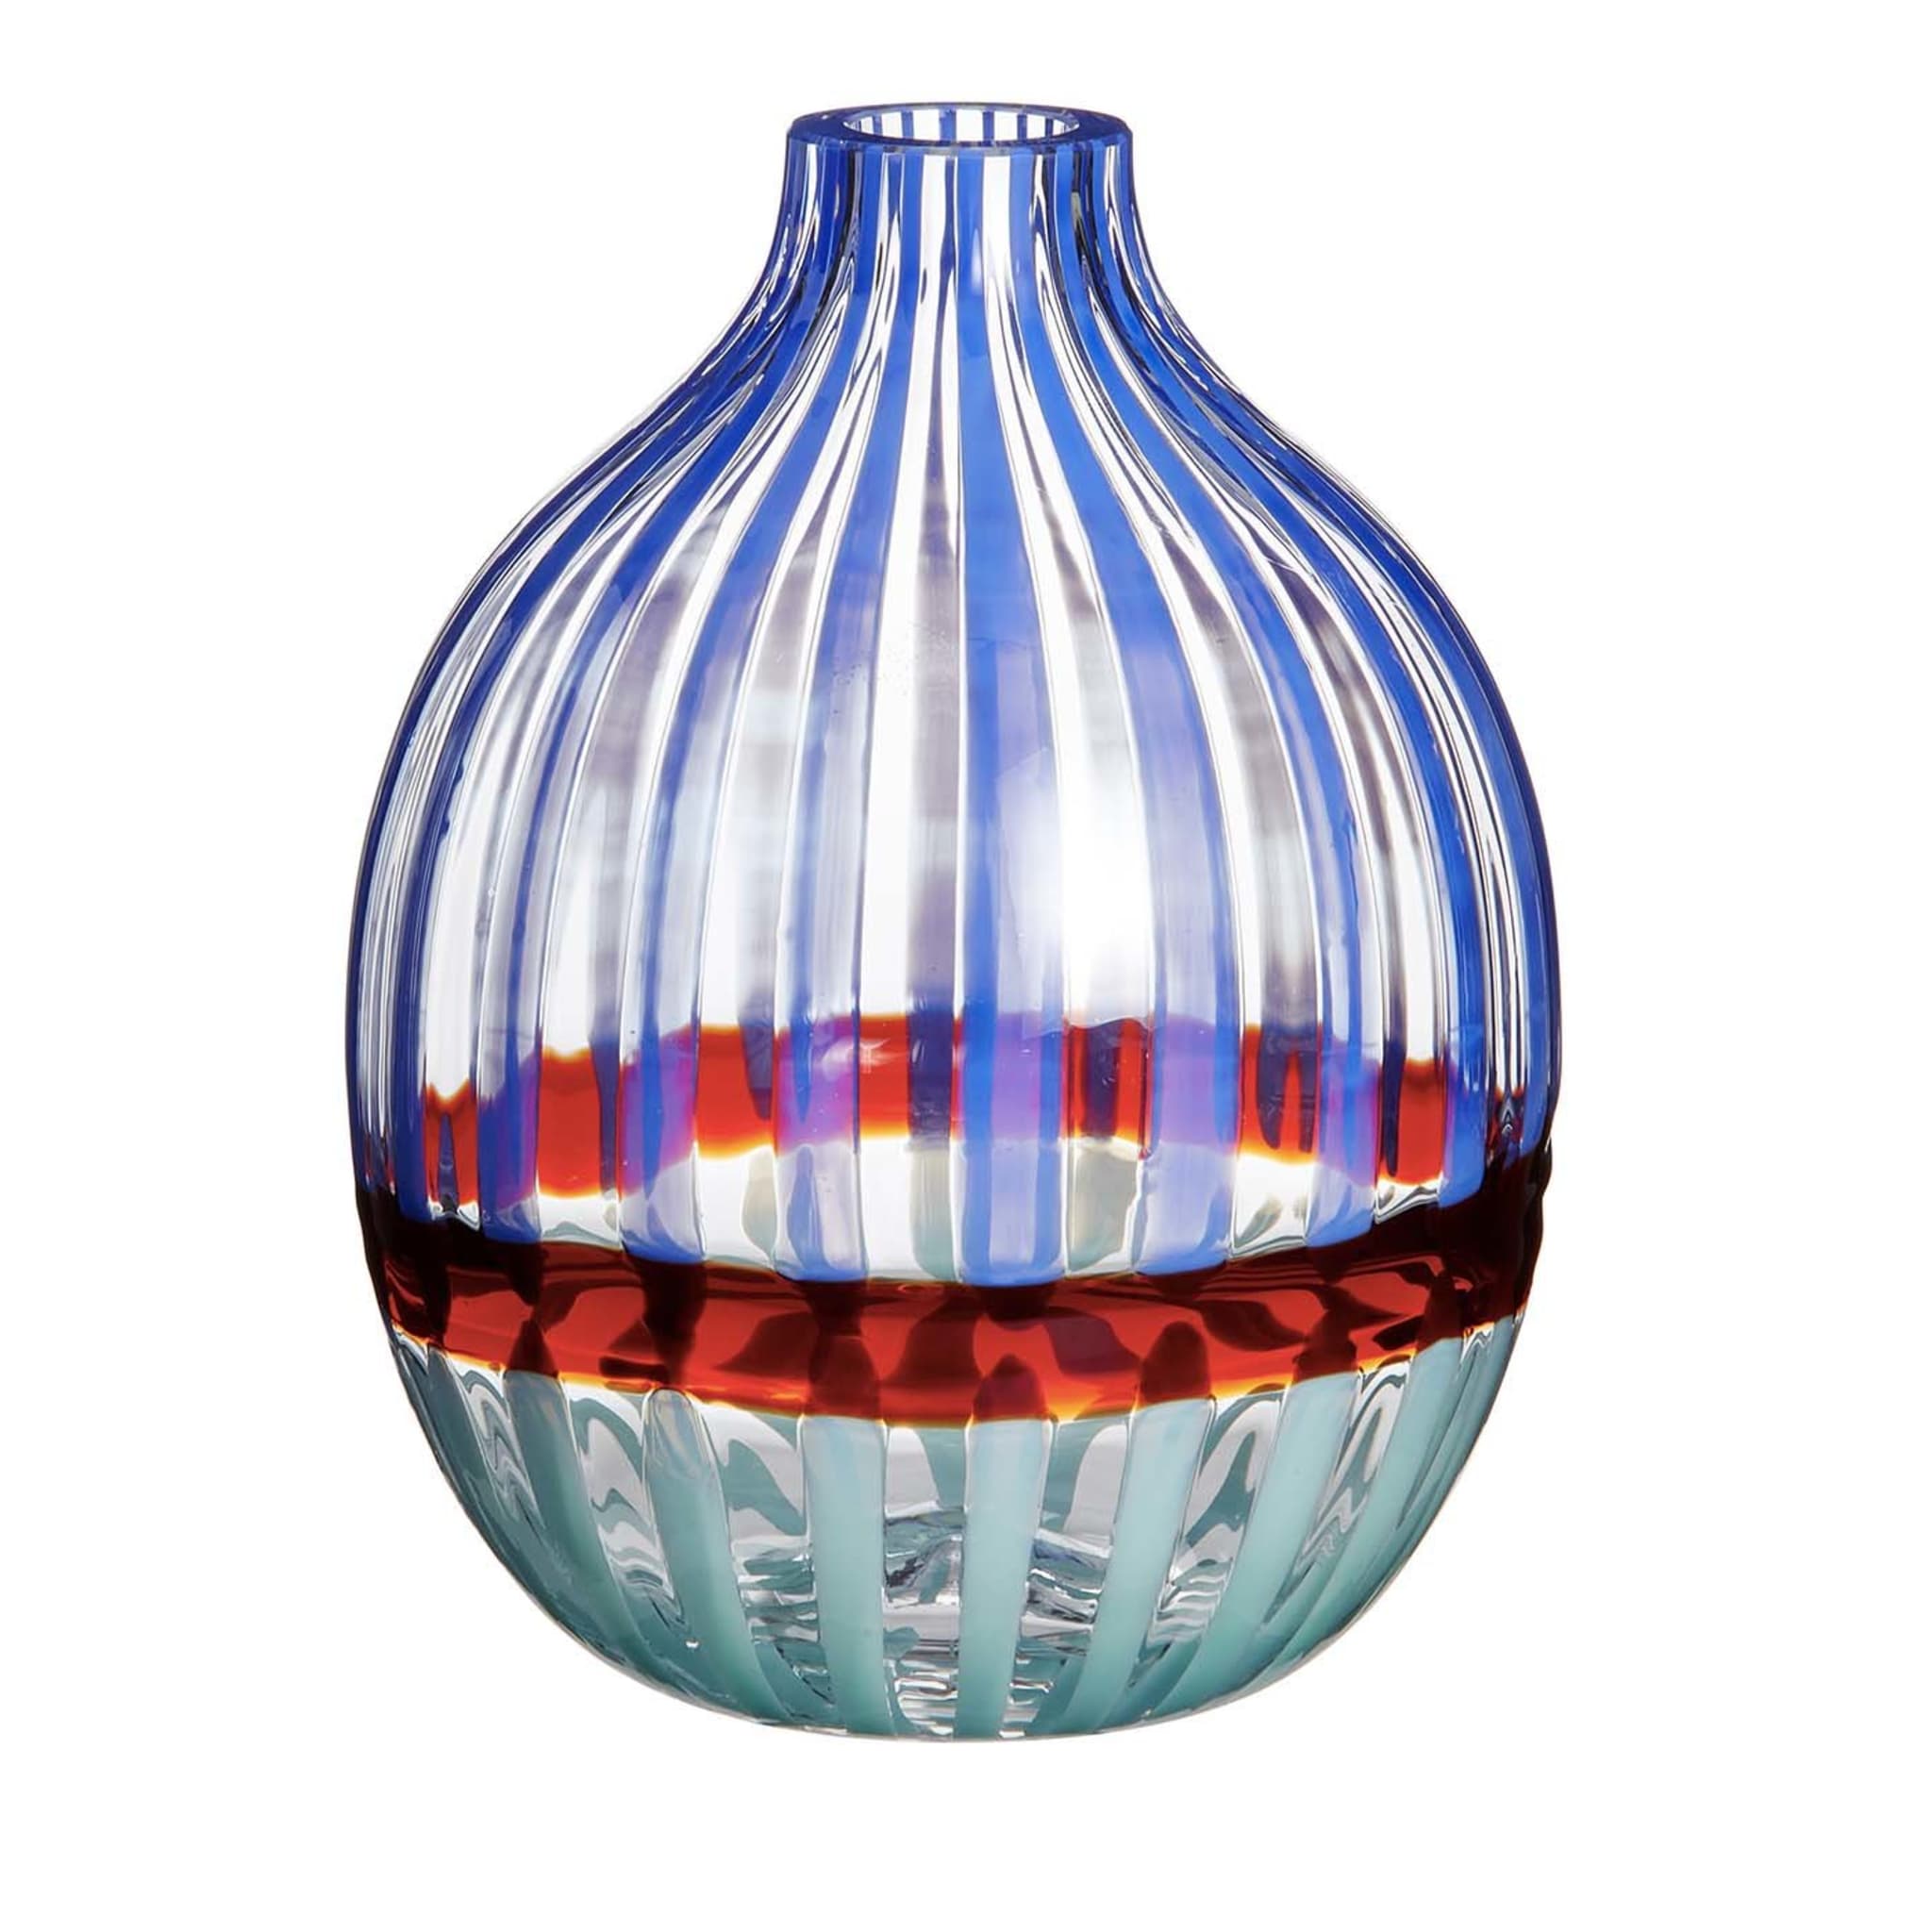 Einblütige Vase Blau/Rot N. 1 - Hauptansicht